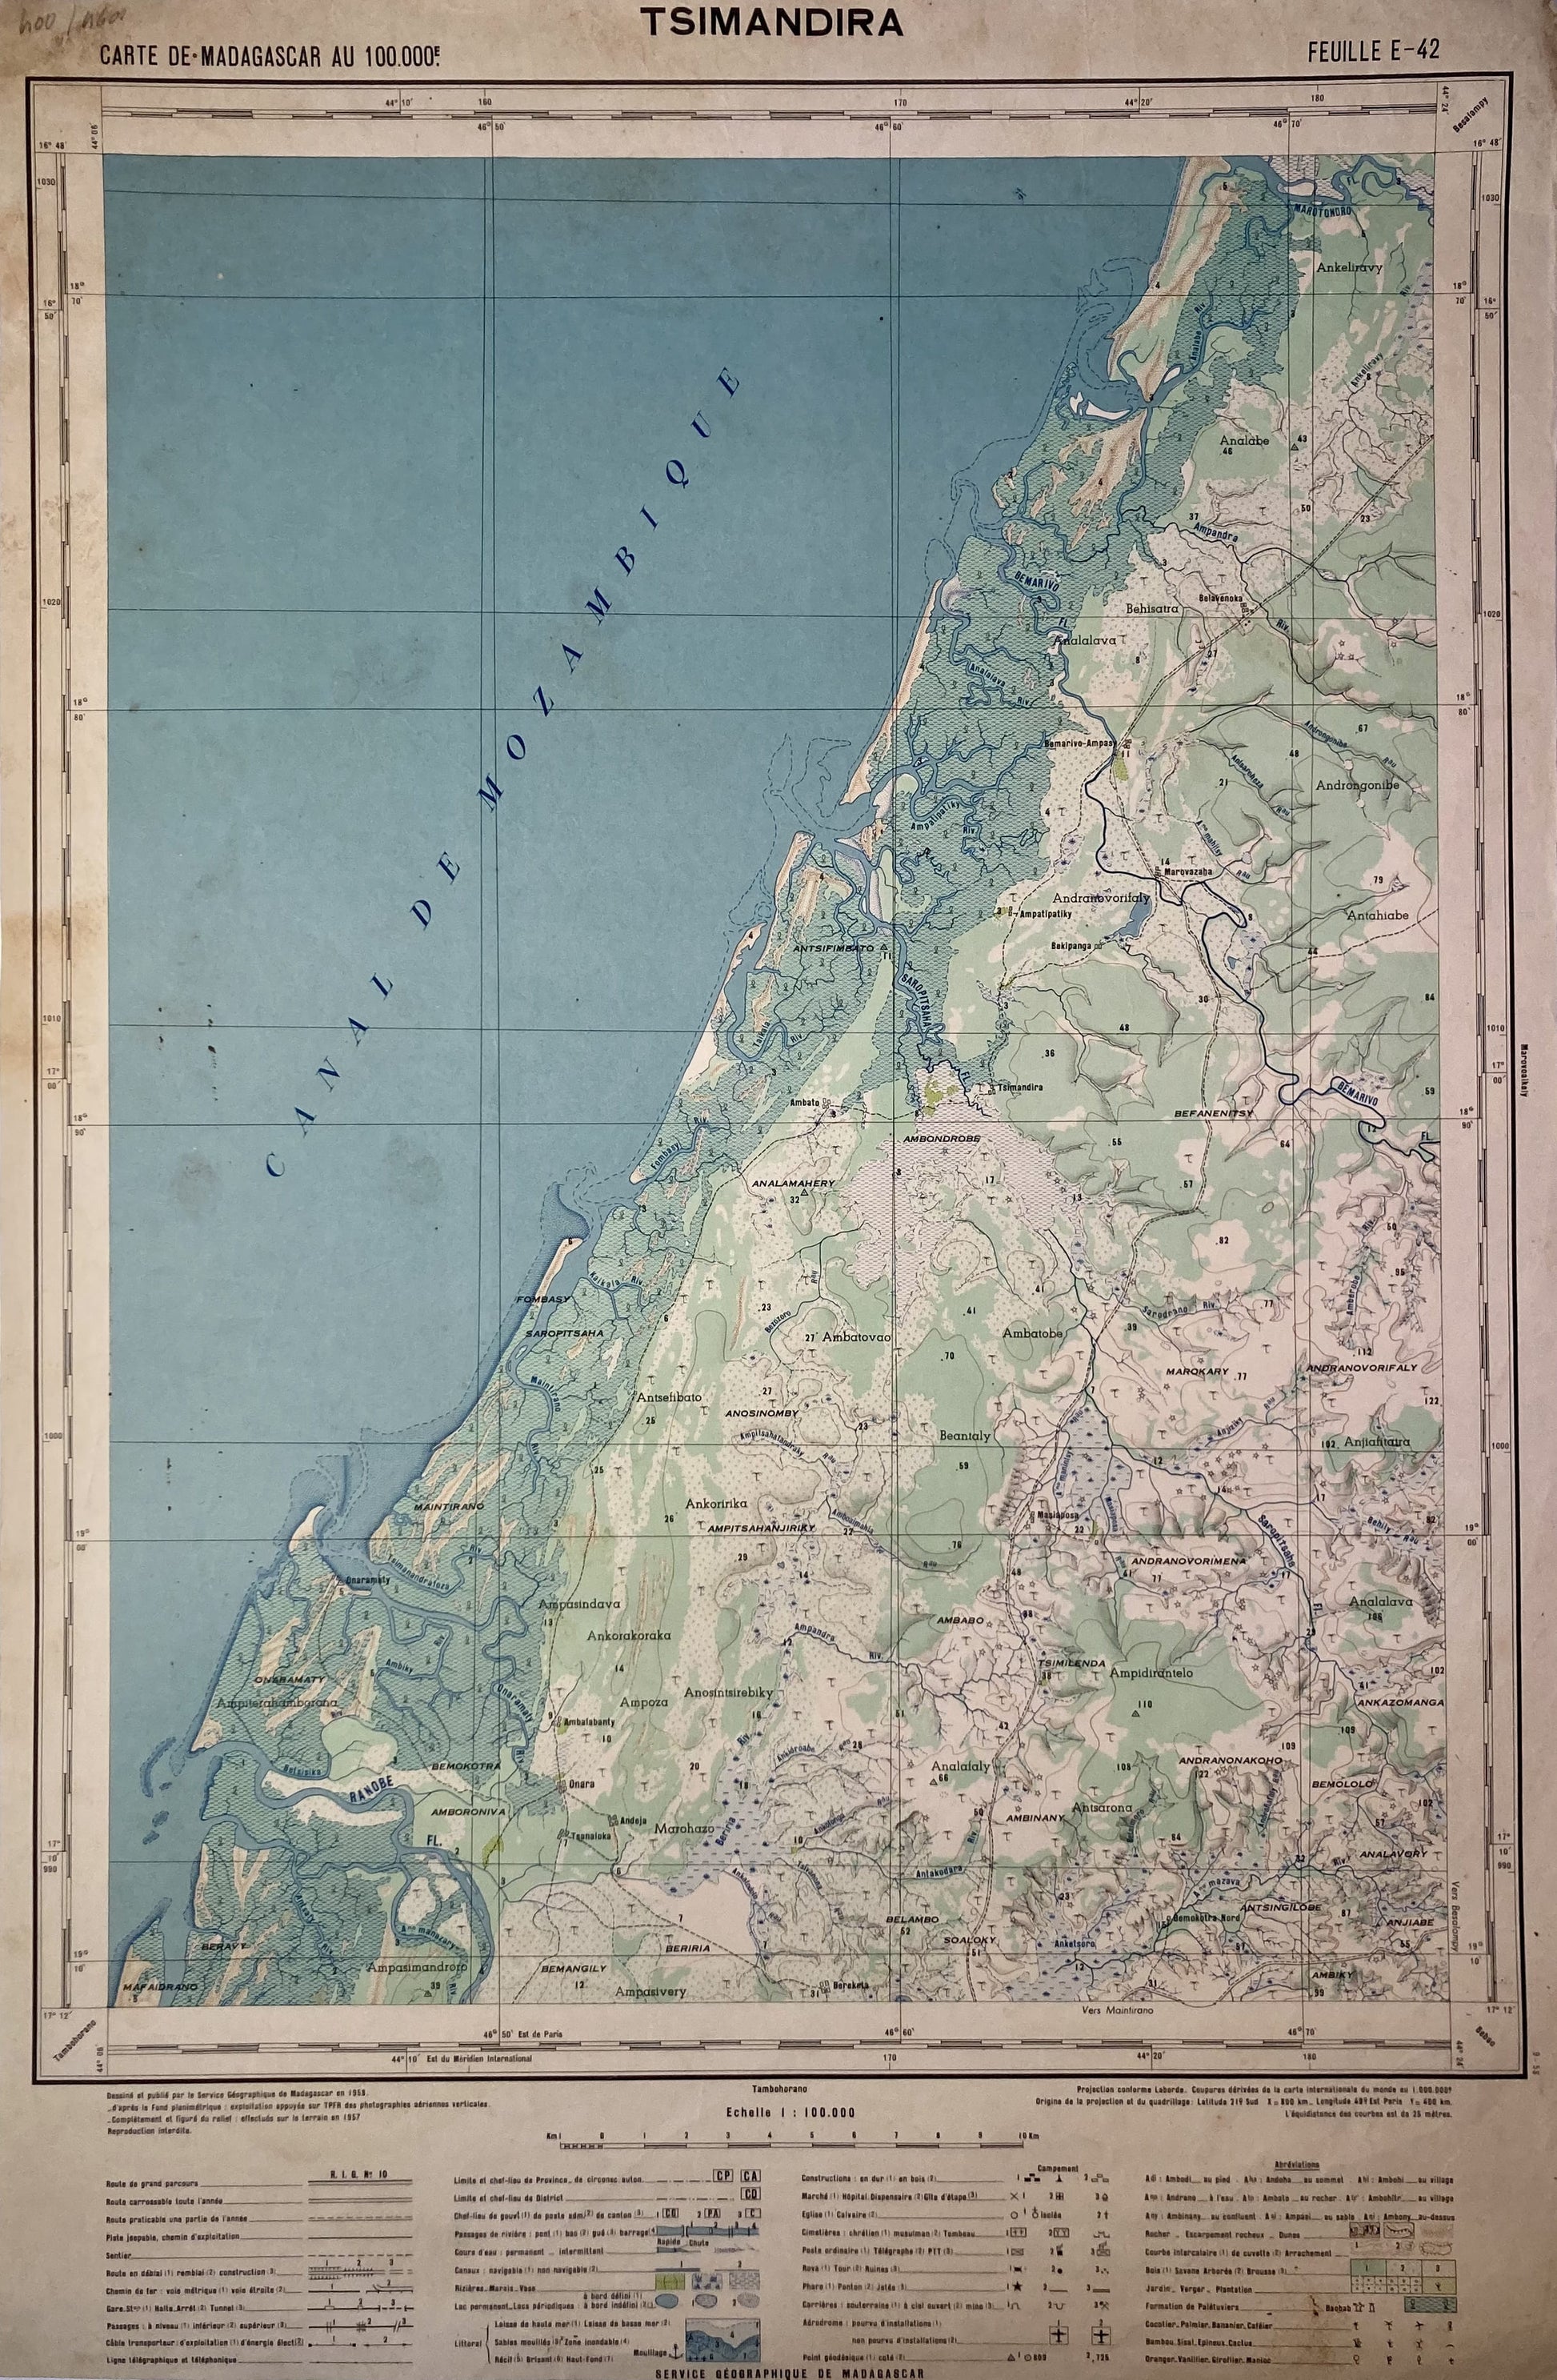 Détail de la carte ancienne de Madagascar, région de Tsimandira